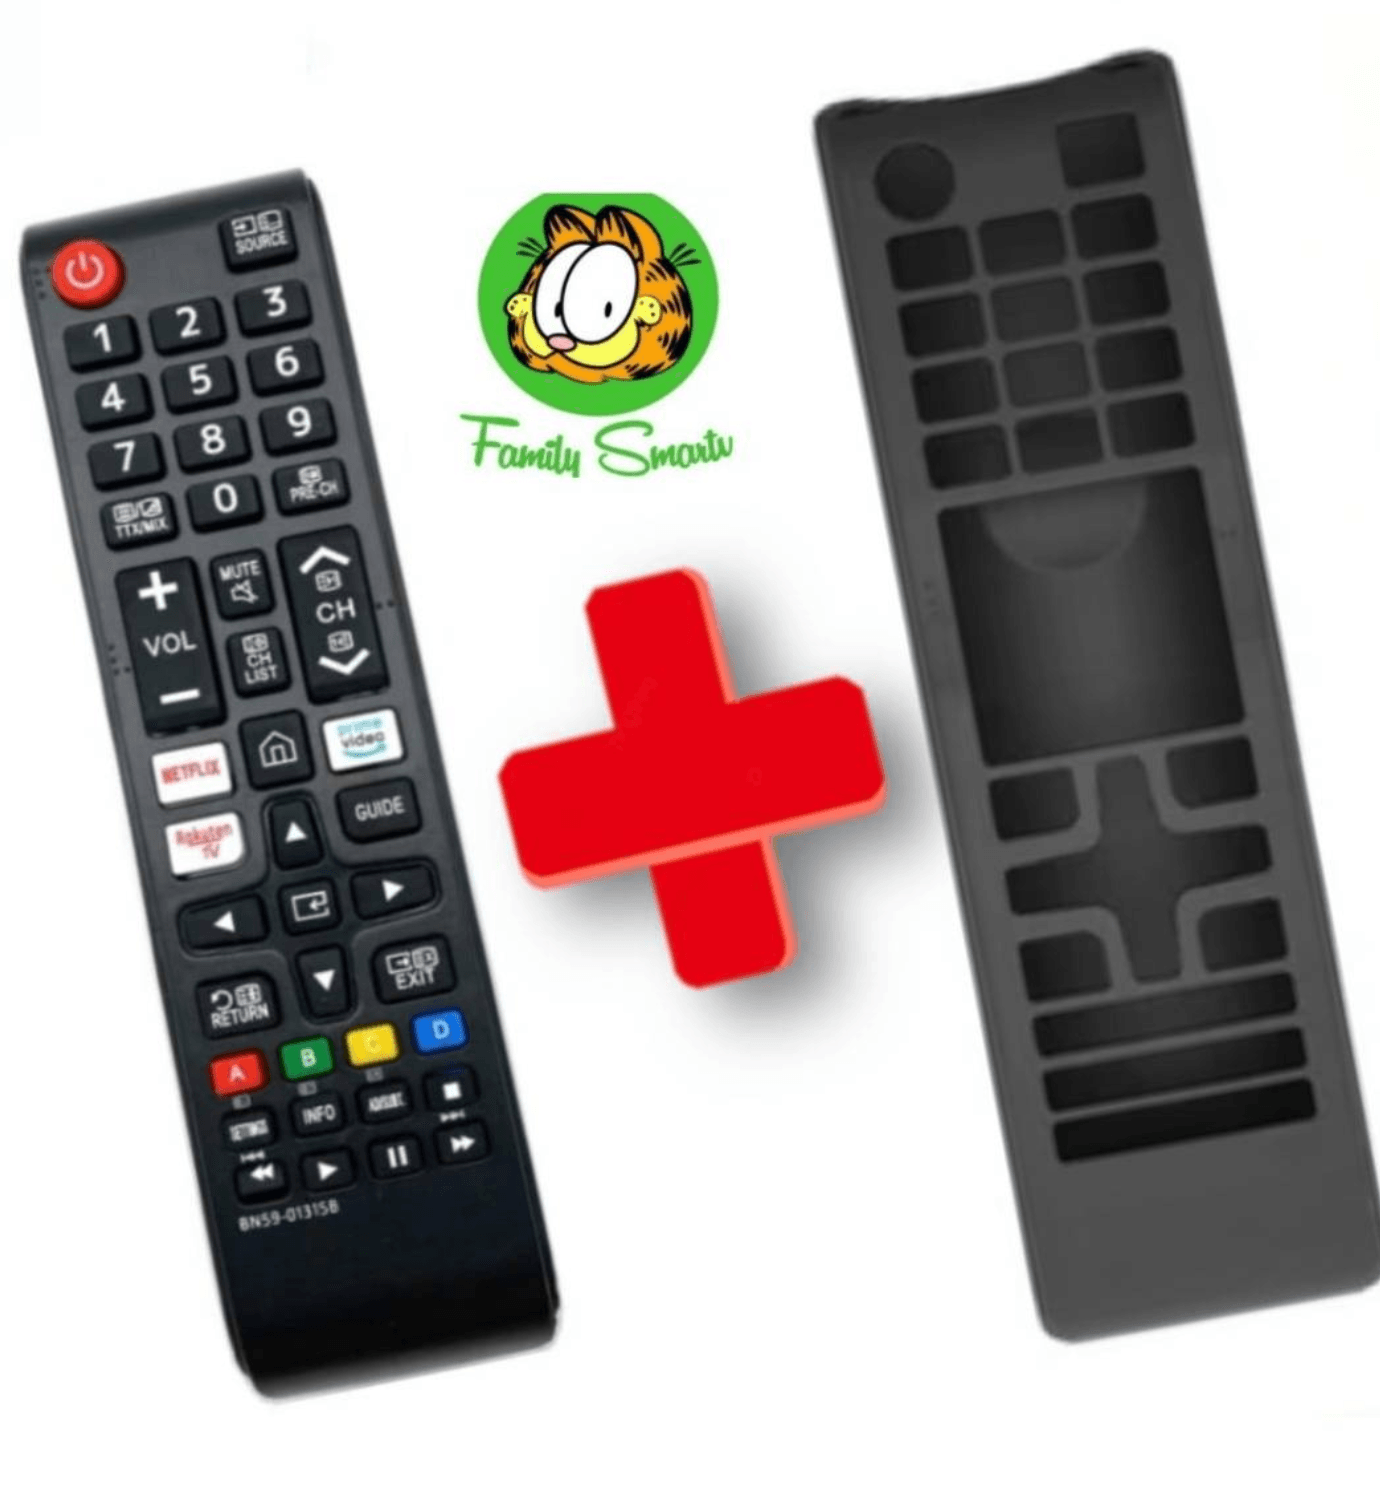 Control Remoto Compatible con TV Samsung Smart Botón Netflix Amazon funda Negra